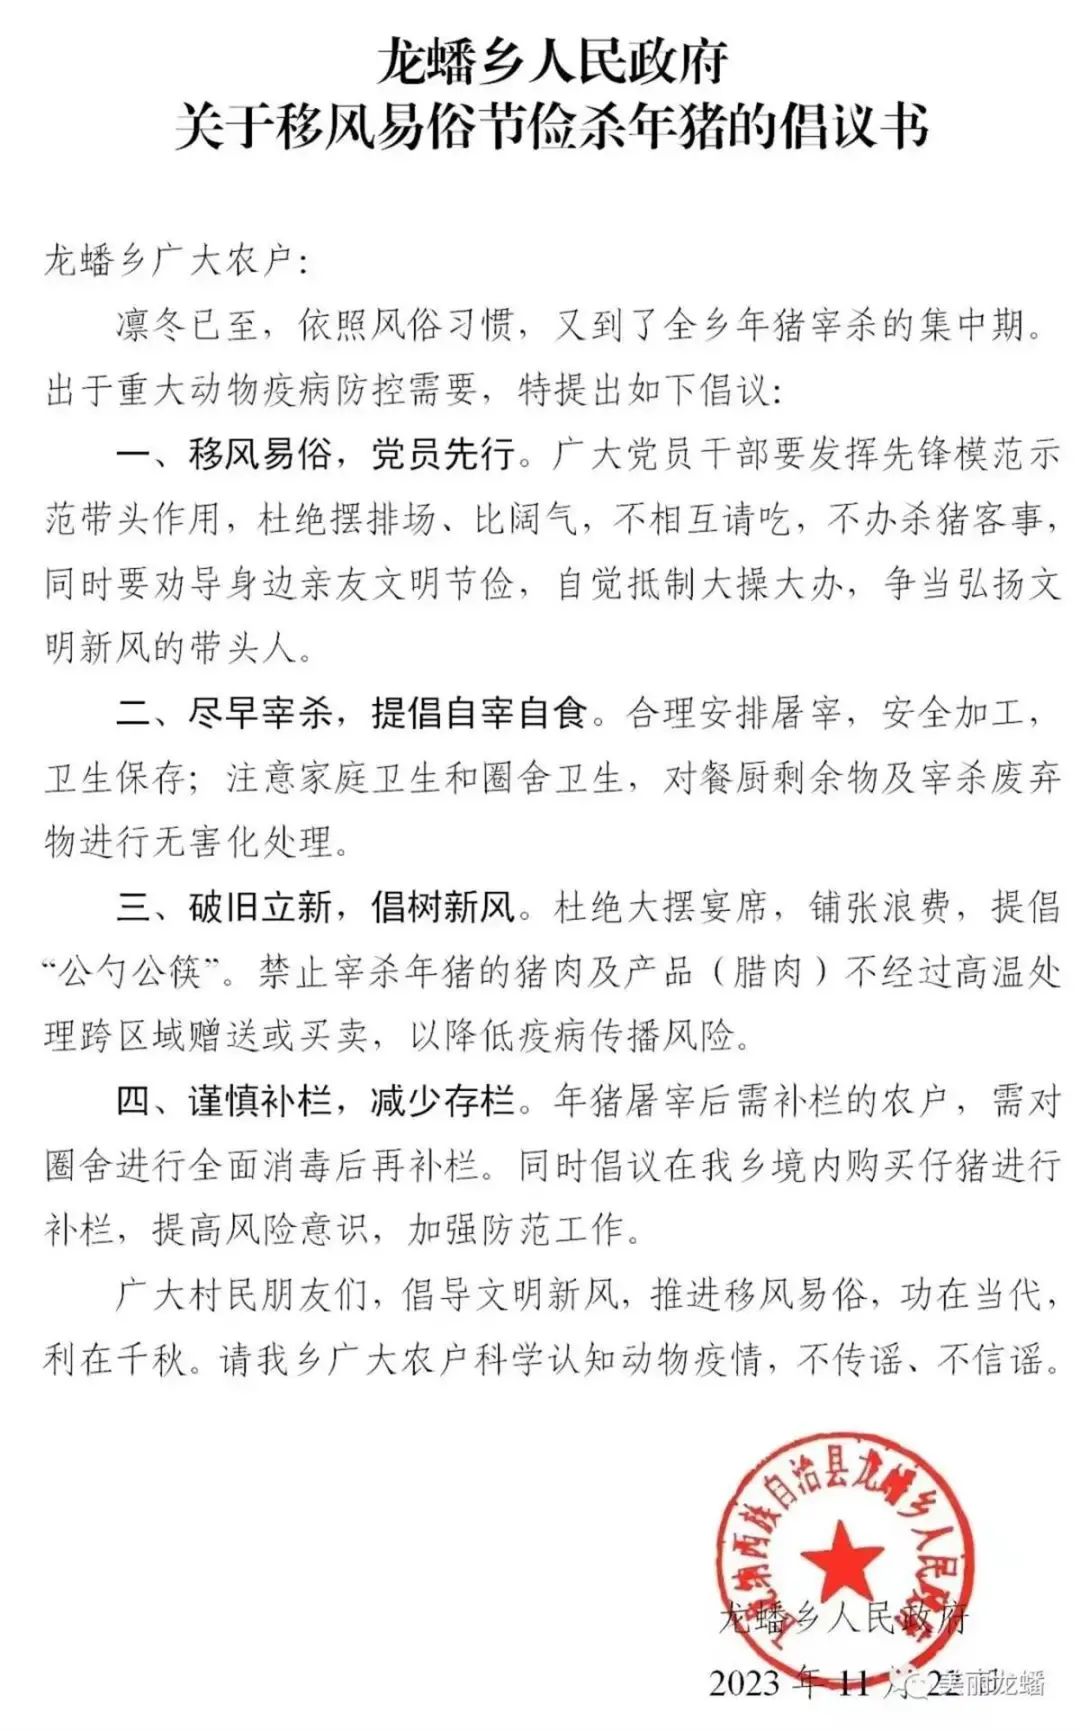 云南丽江发布节俭杀年猪的倡议书